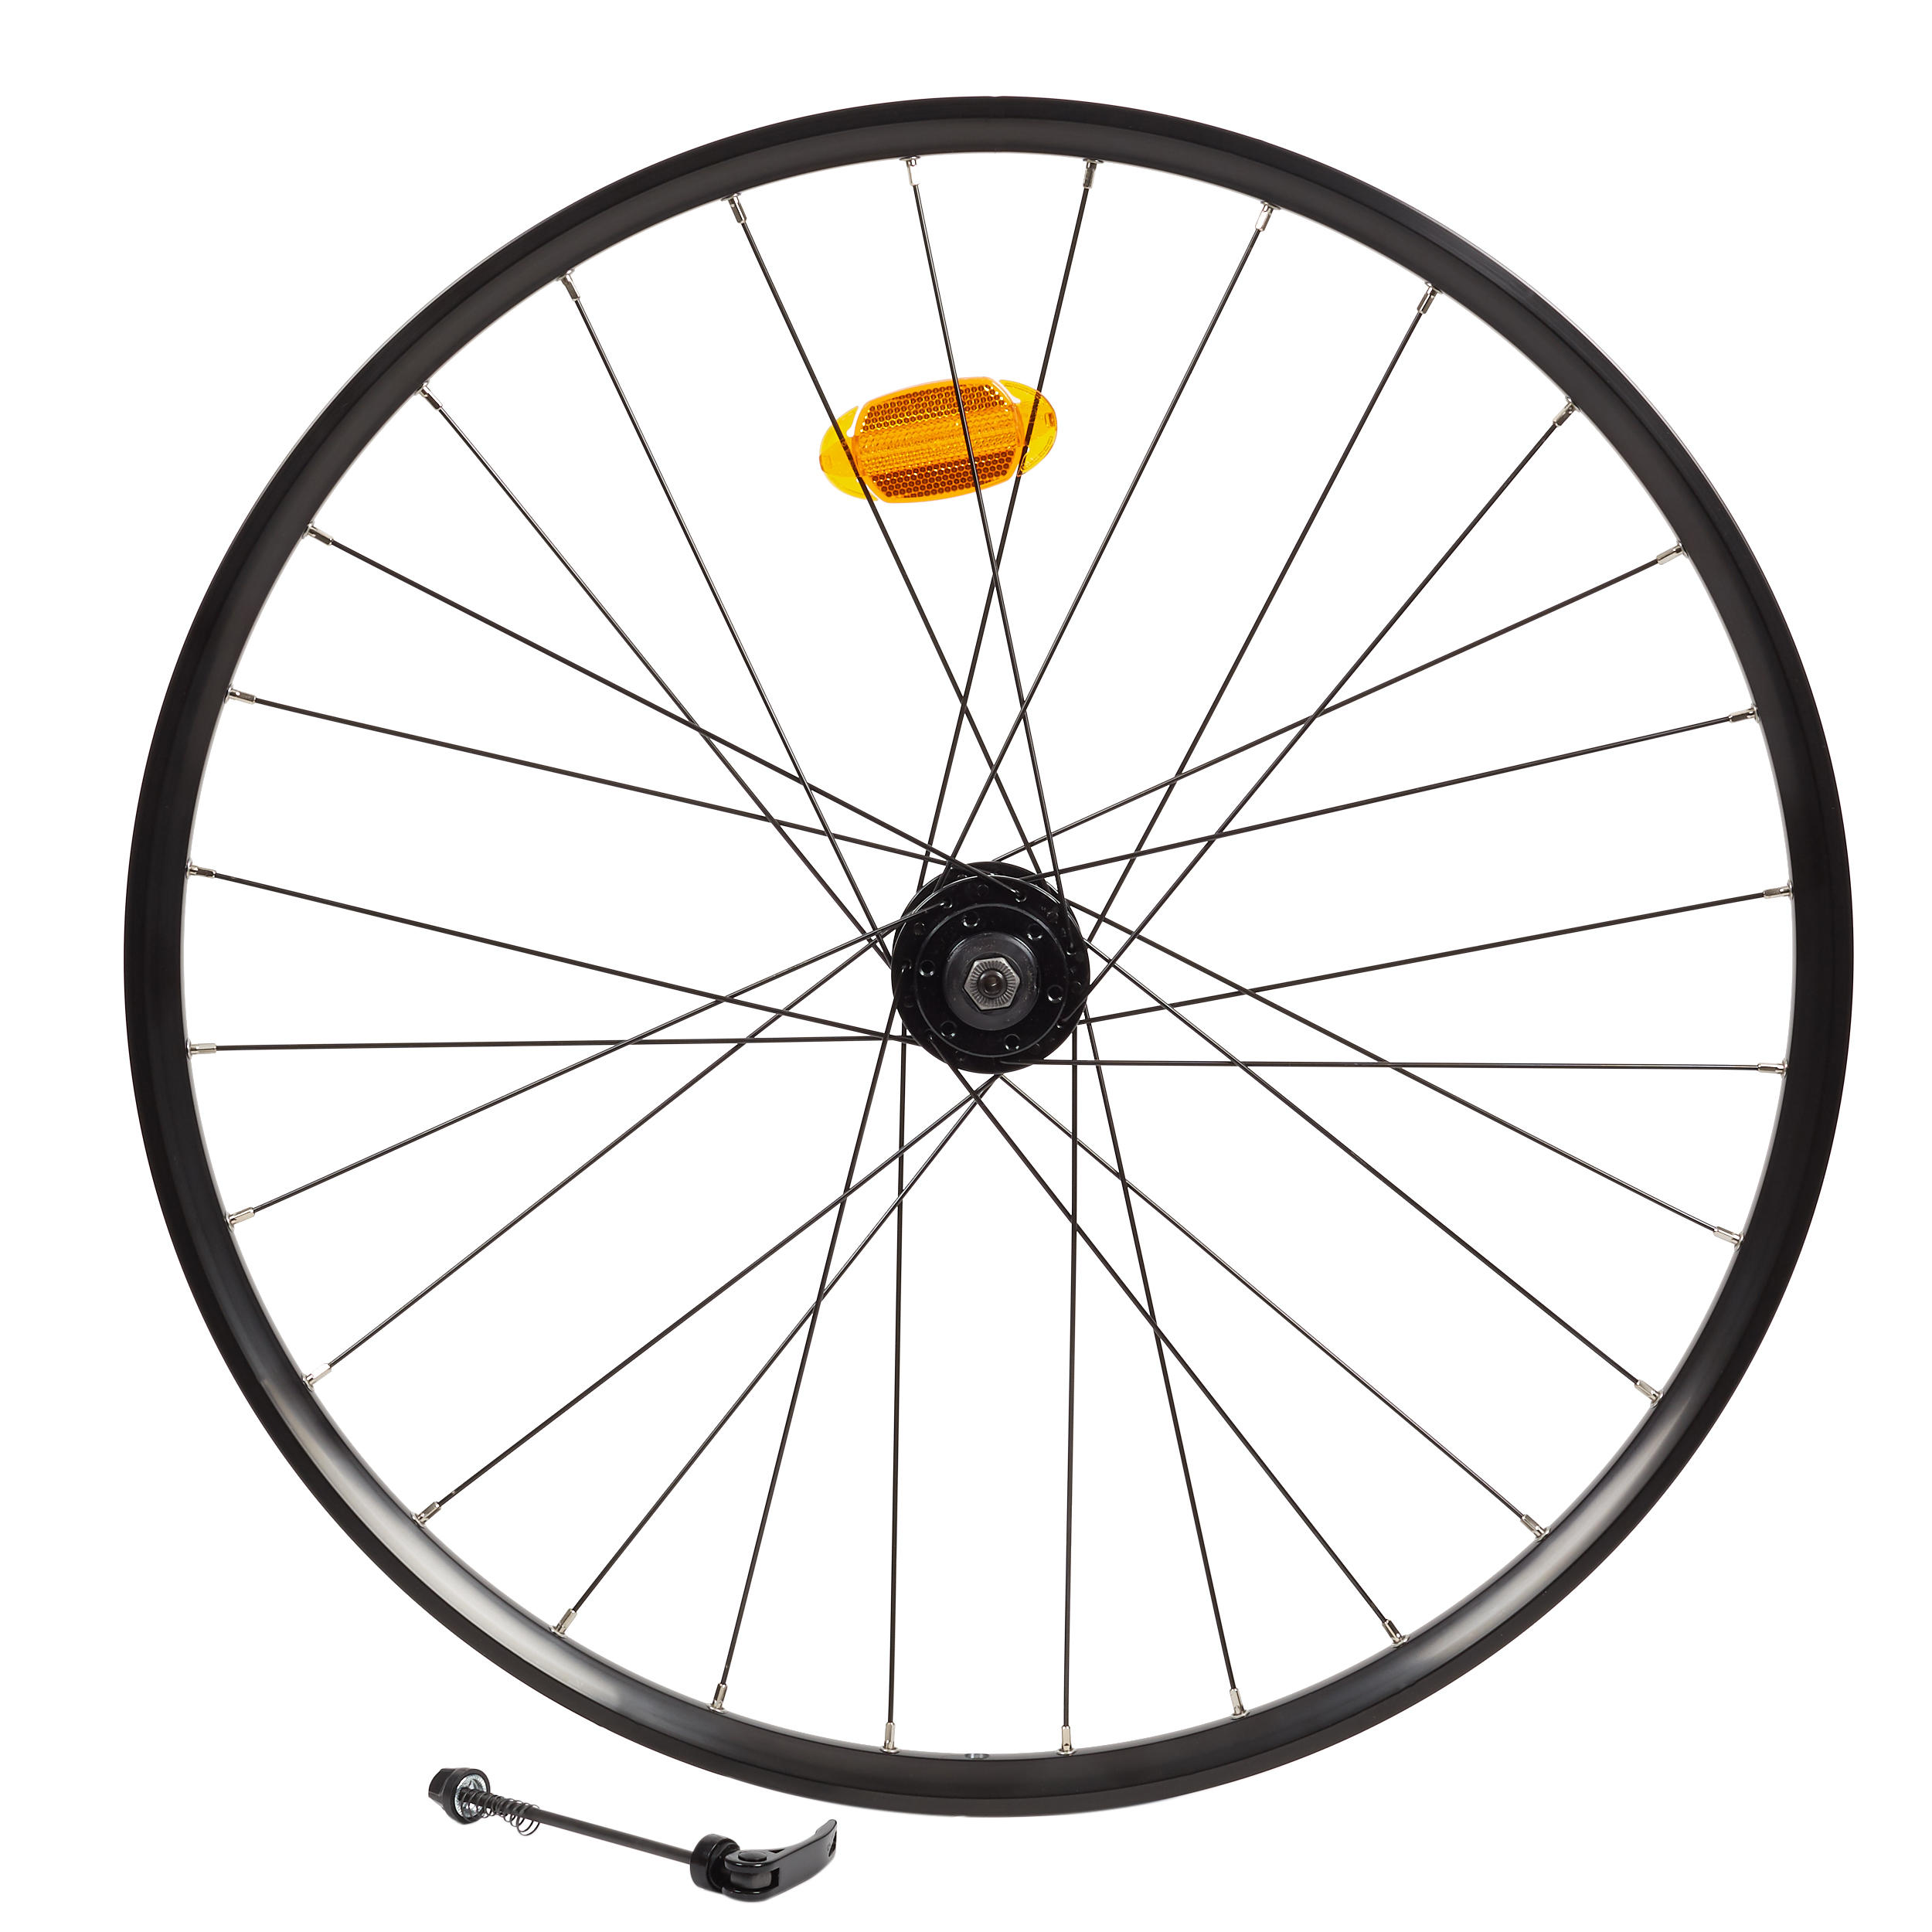 27 inch rear bike wheel